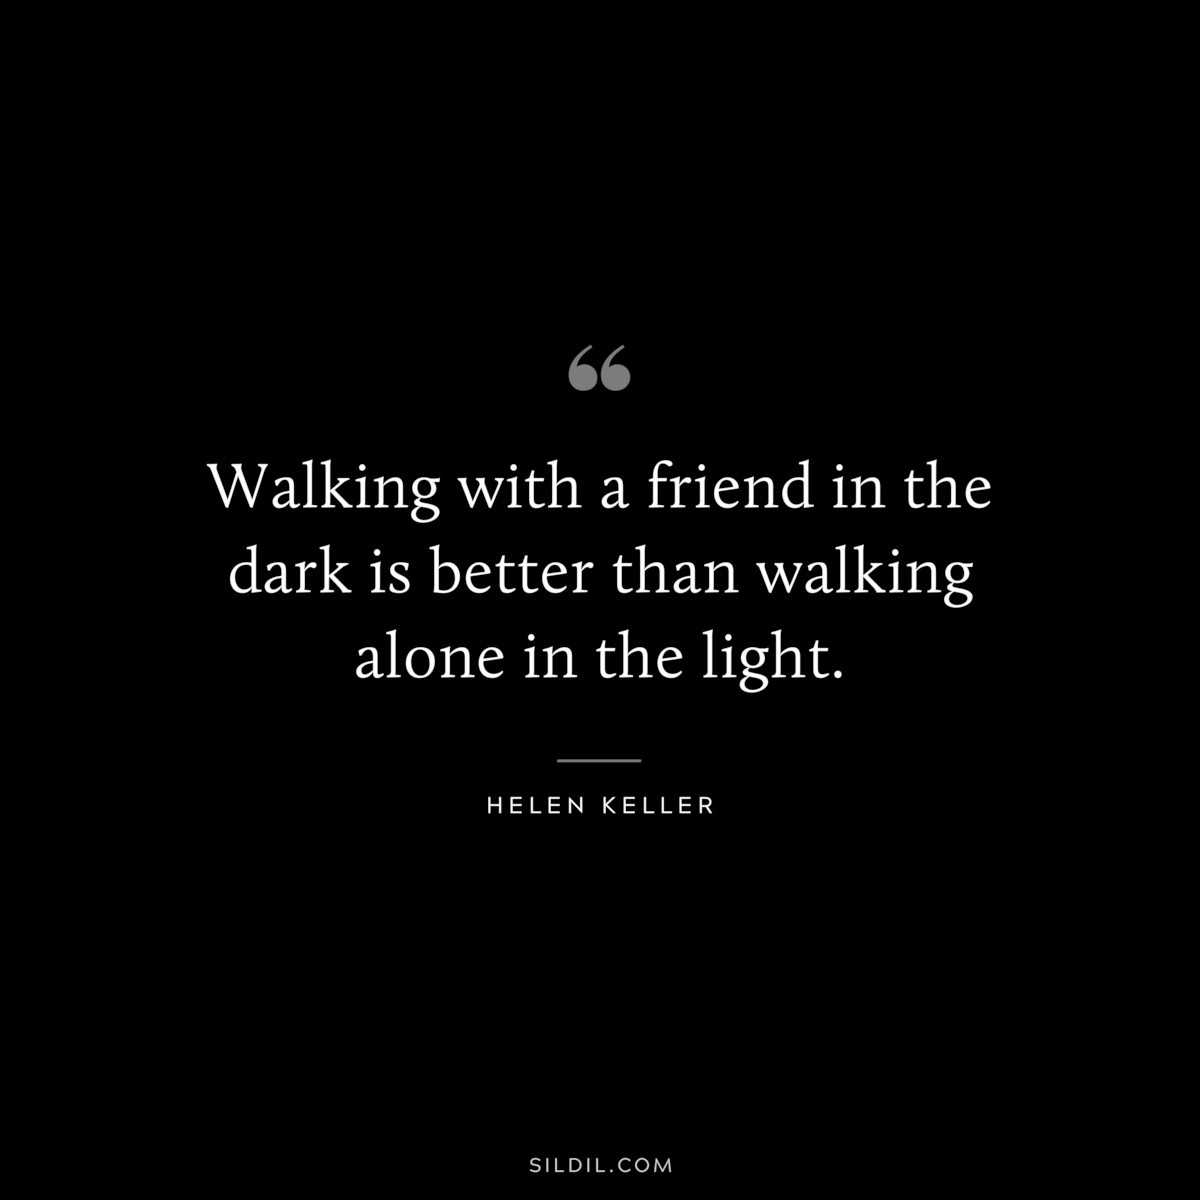 Walking with a friend in the dark is better than walking alone in the light. ― Helen Keller